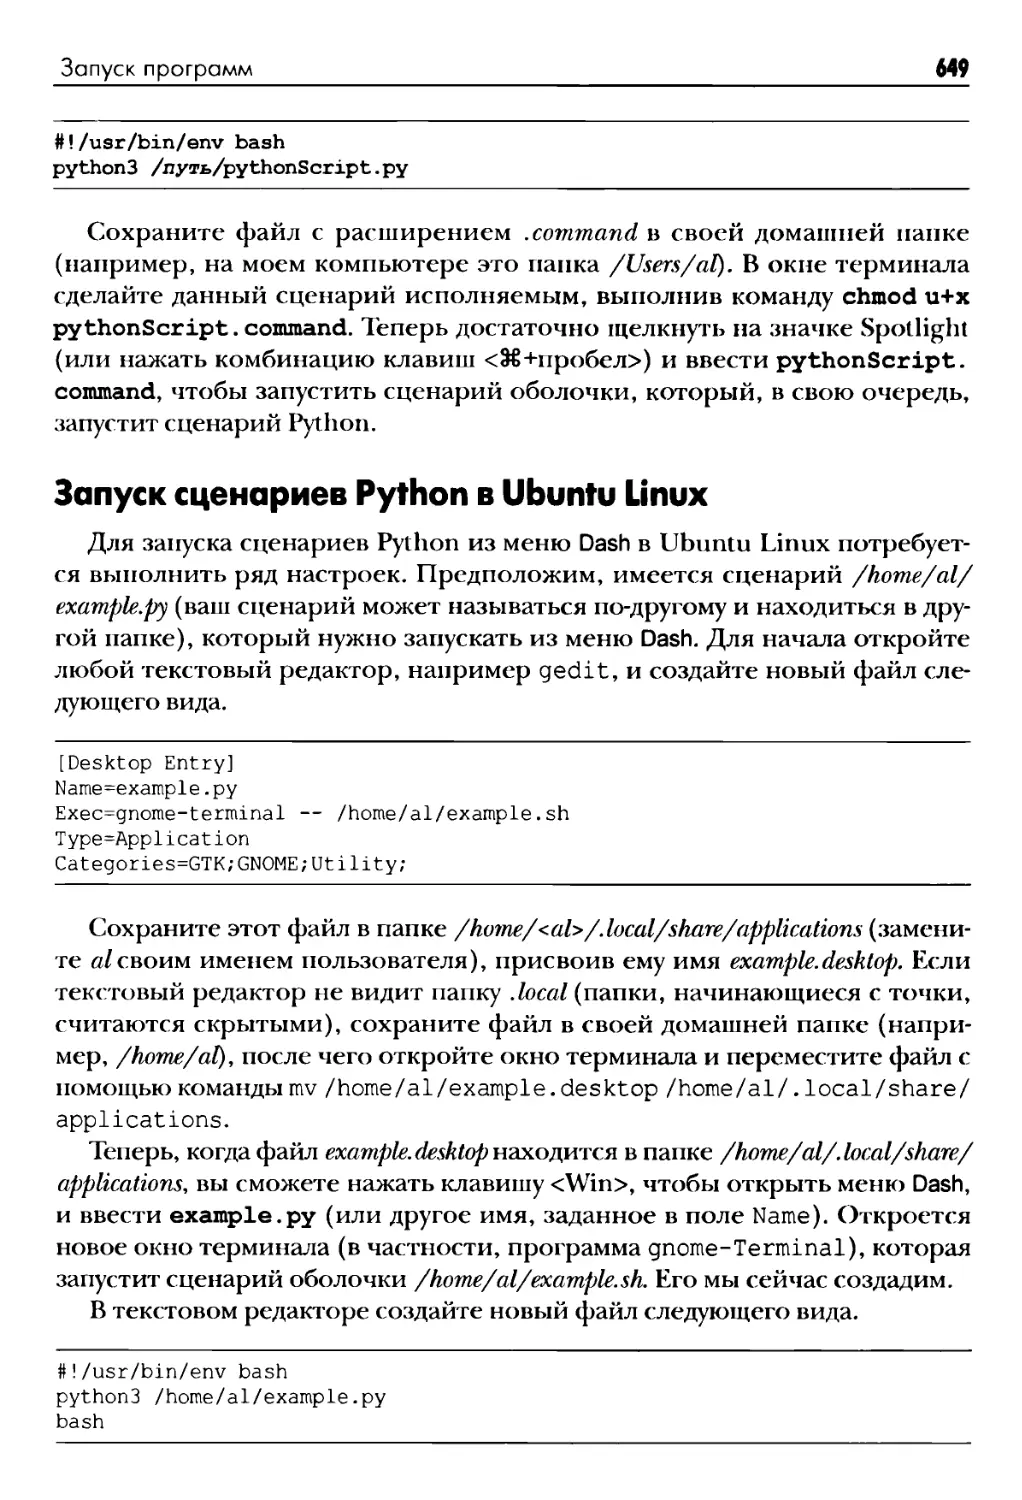 Запуск сценариев Python в Ubuntu Linux